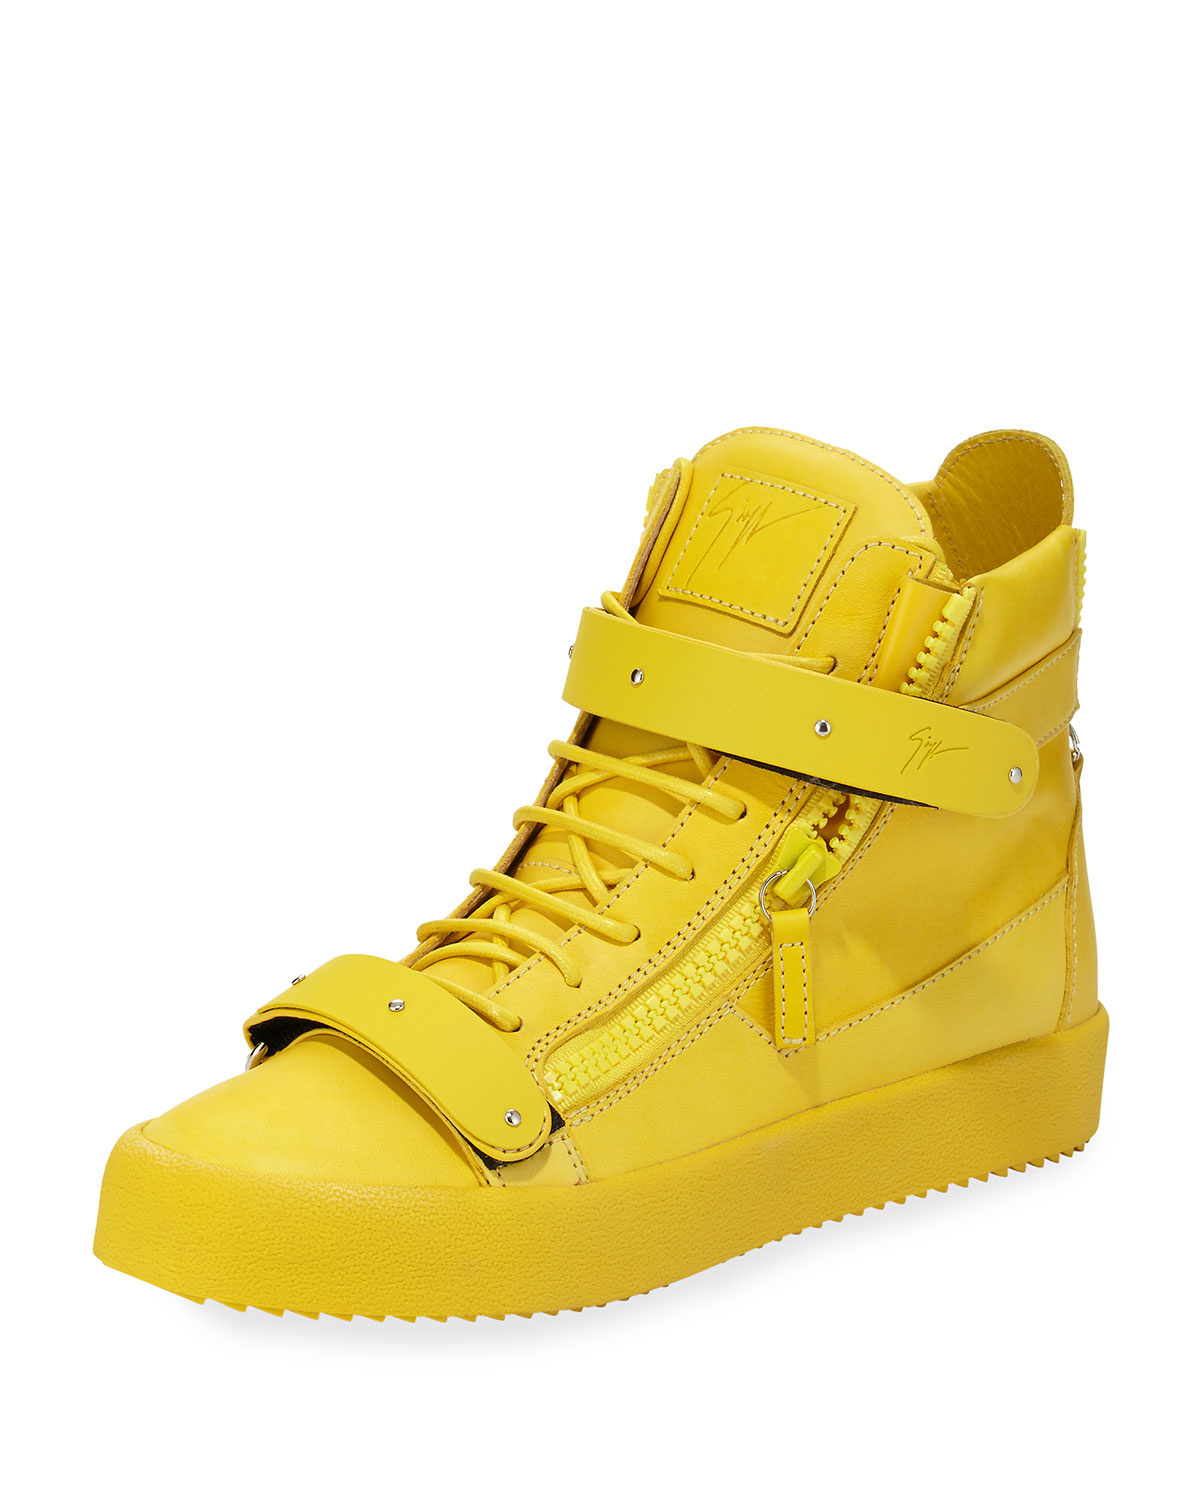 mens yellow sneakers